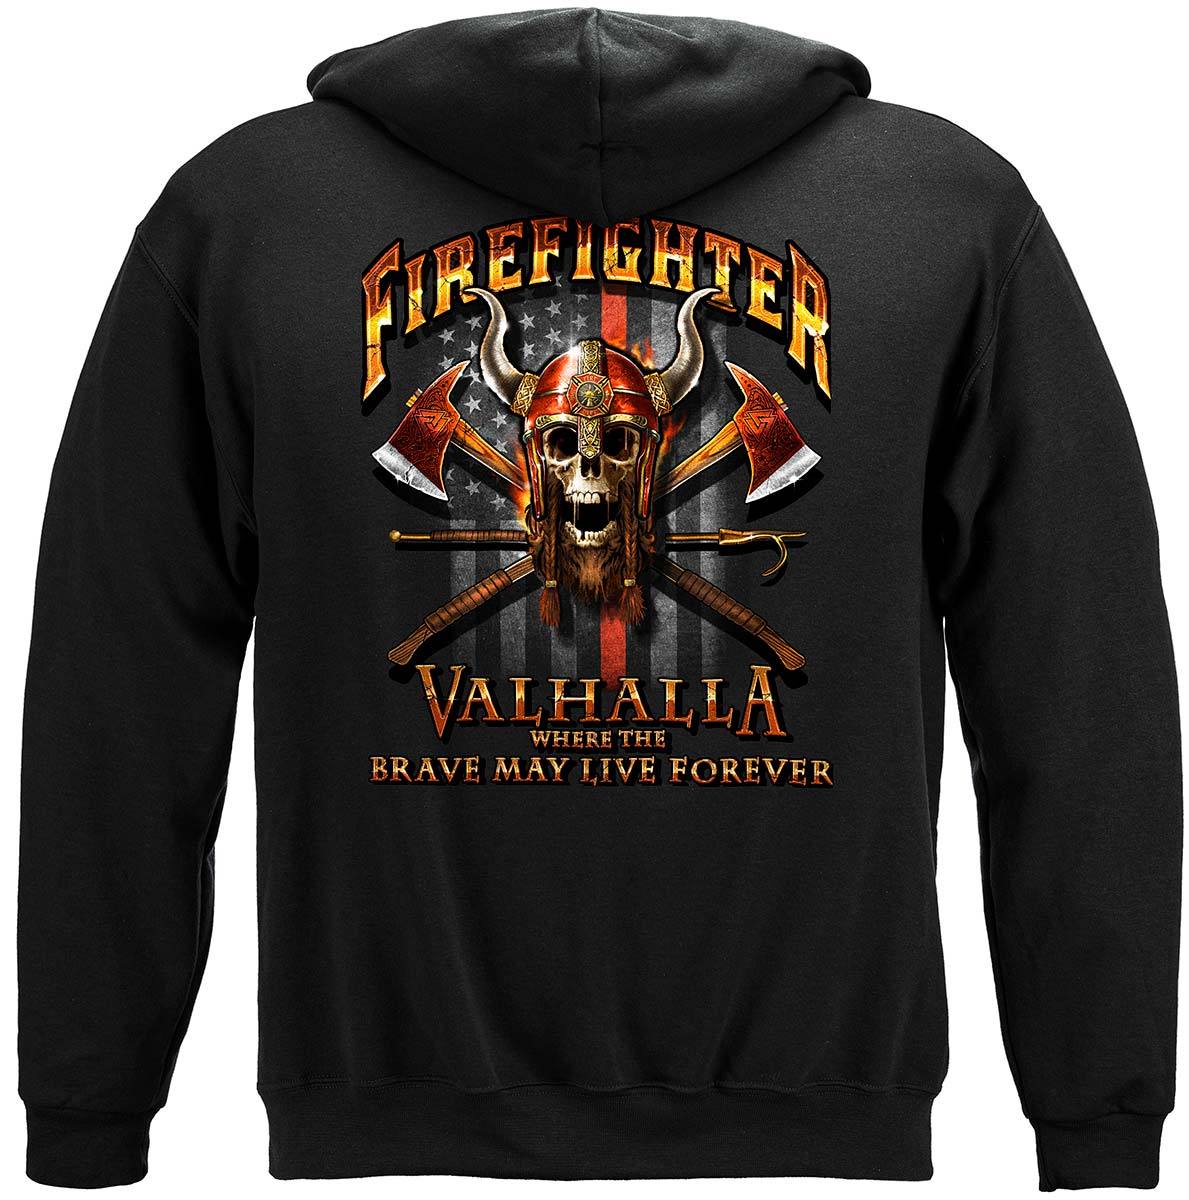 Firefighter Viking Premium Long Sleeves